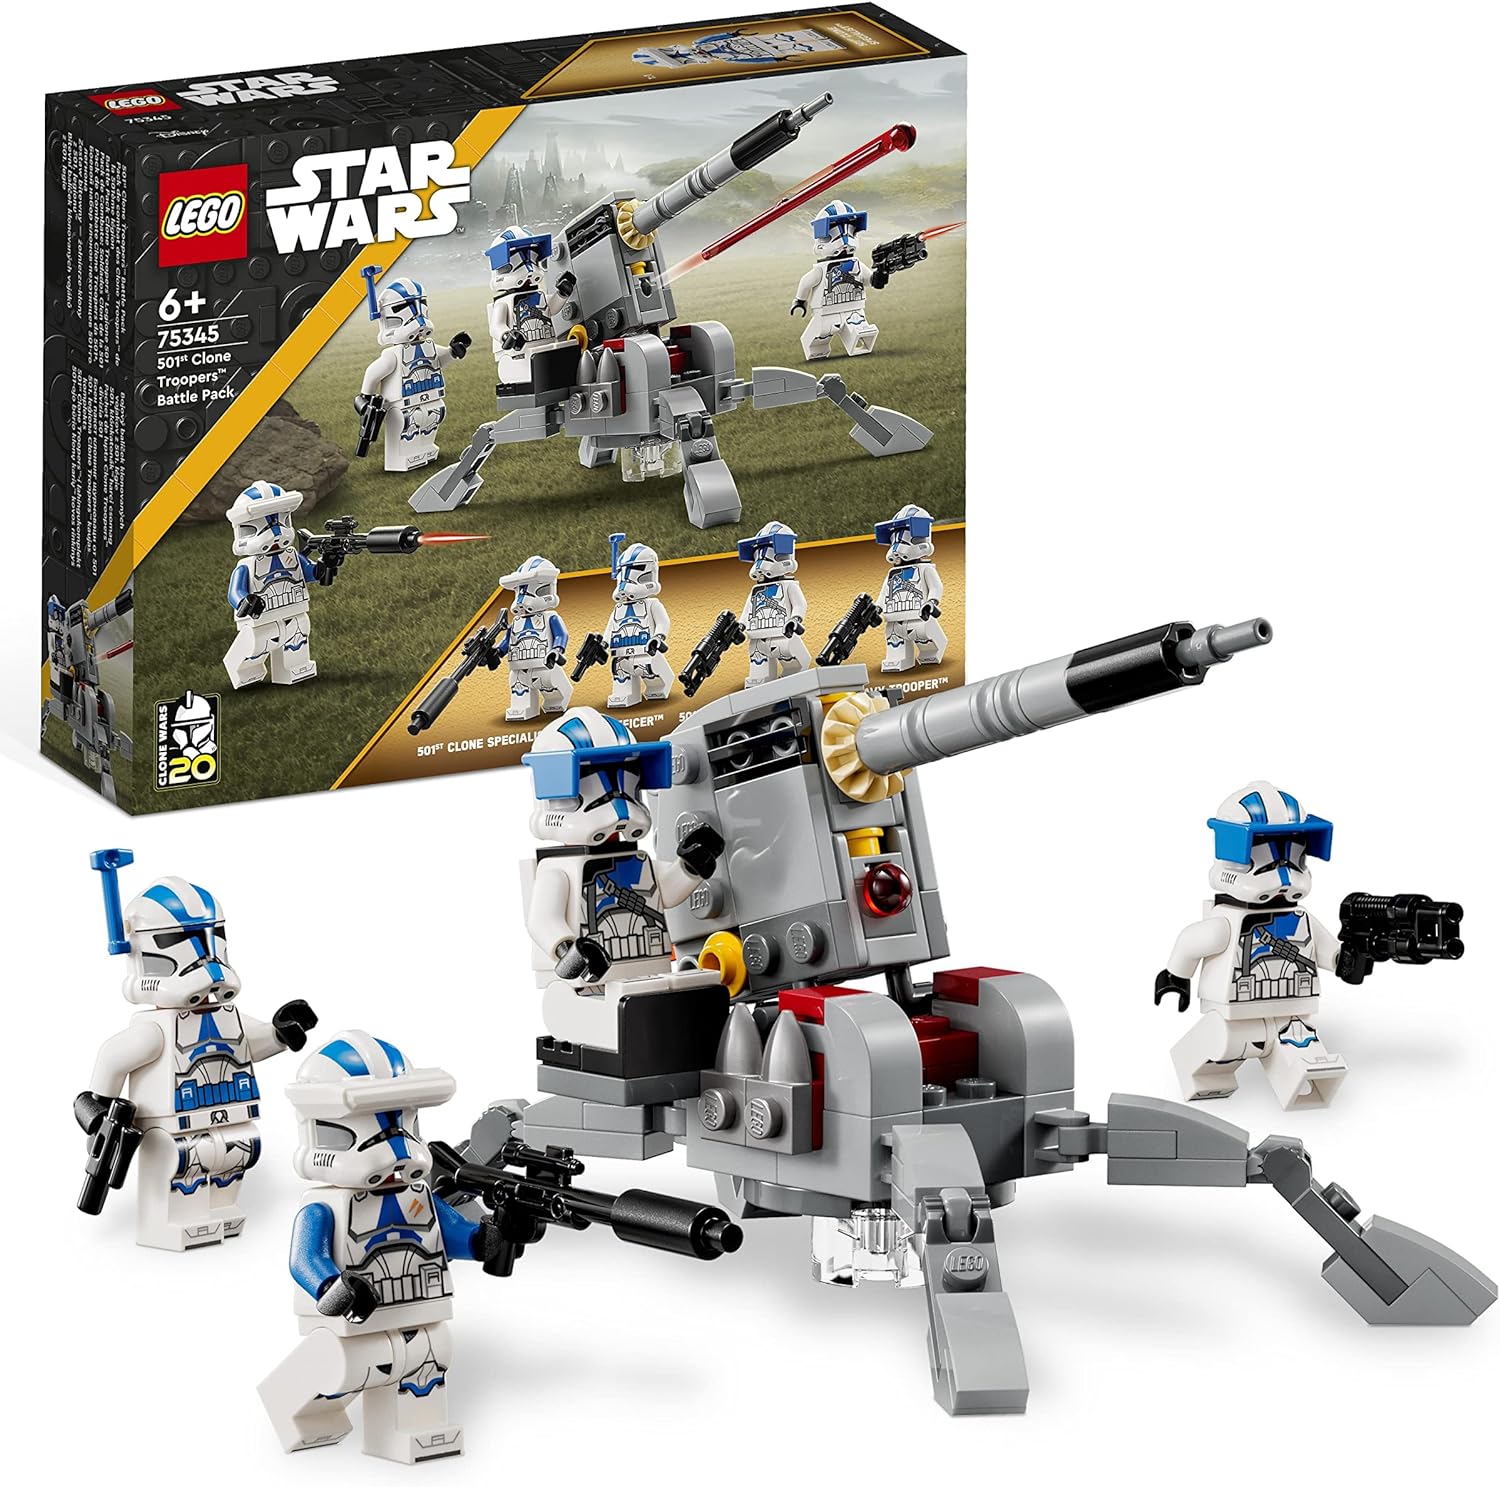 LEGO 75345 Star Wars 501st Clone Troopers Battle Pack Set mit Minifiguren AV-7 Anti-Fahrzeug-Kanone und federbelastetem Shooter LEGO-Sets LEGO-Steine Bausteine Sets